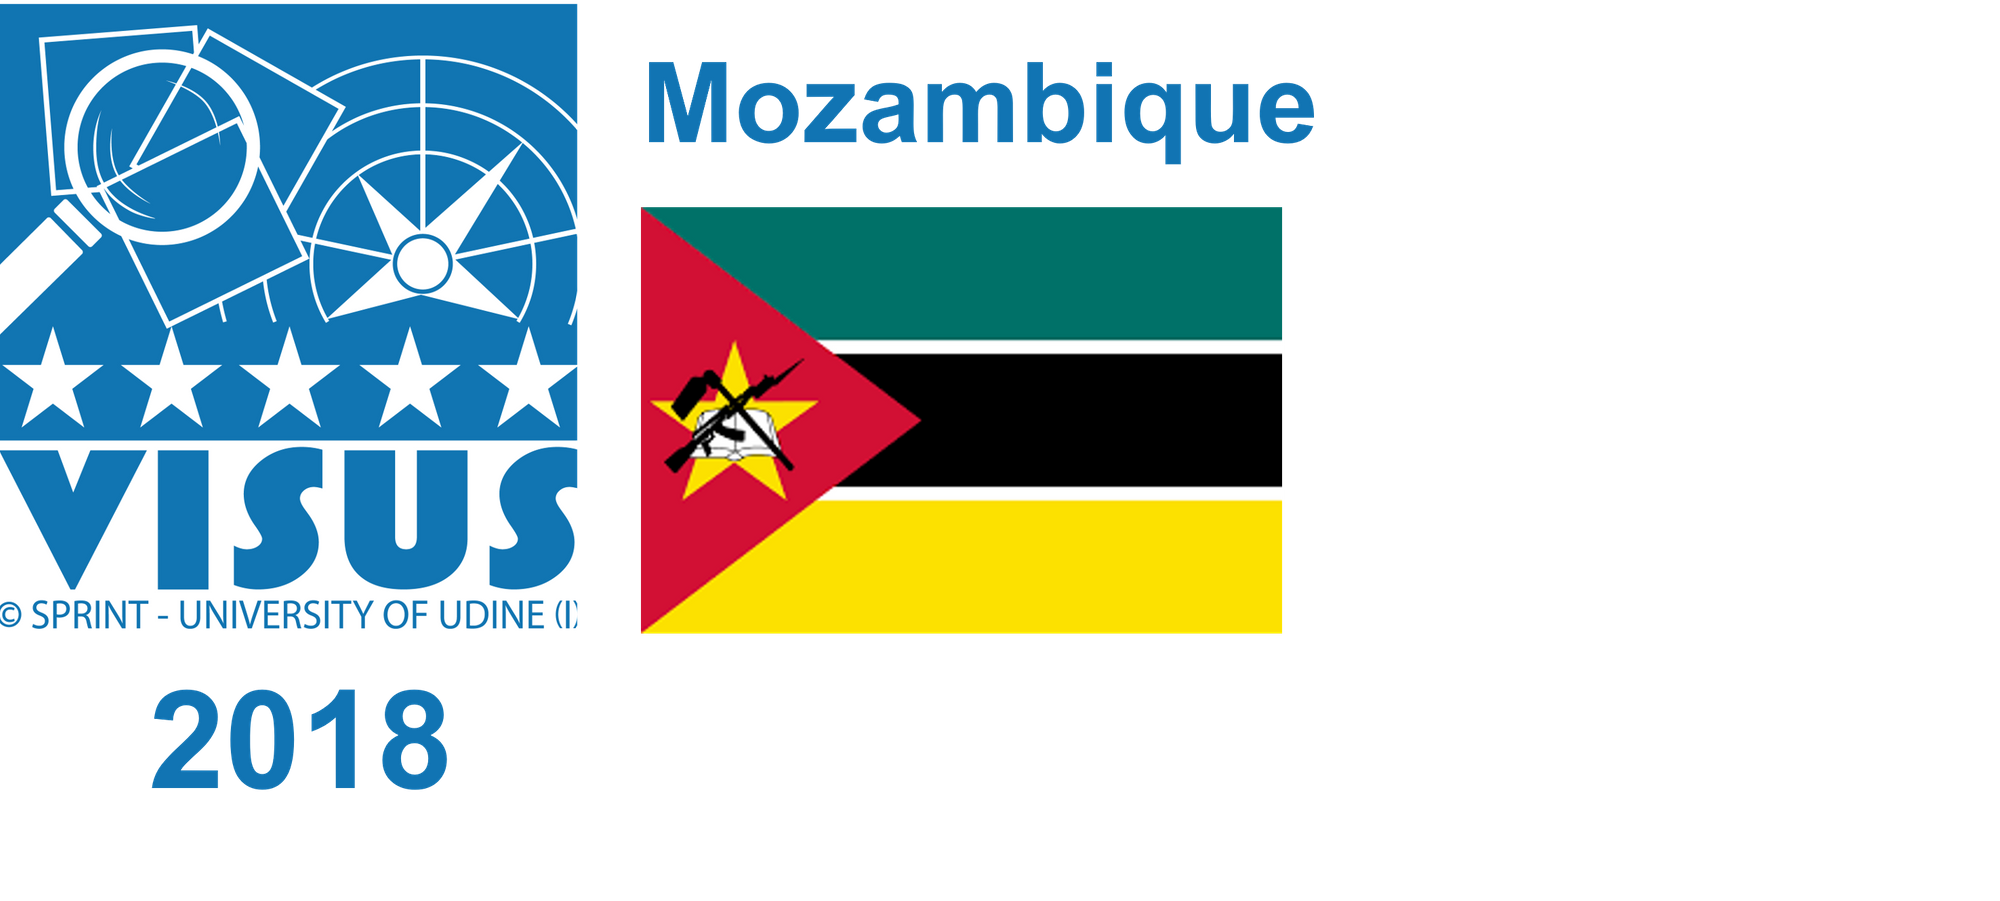 2018 Mozambique